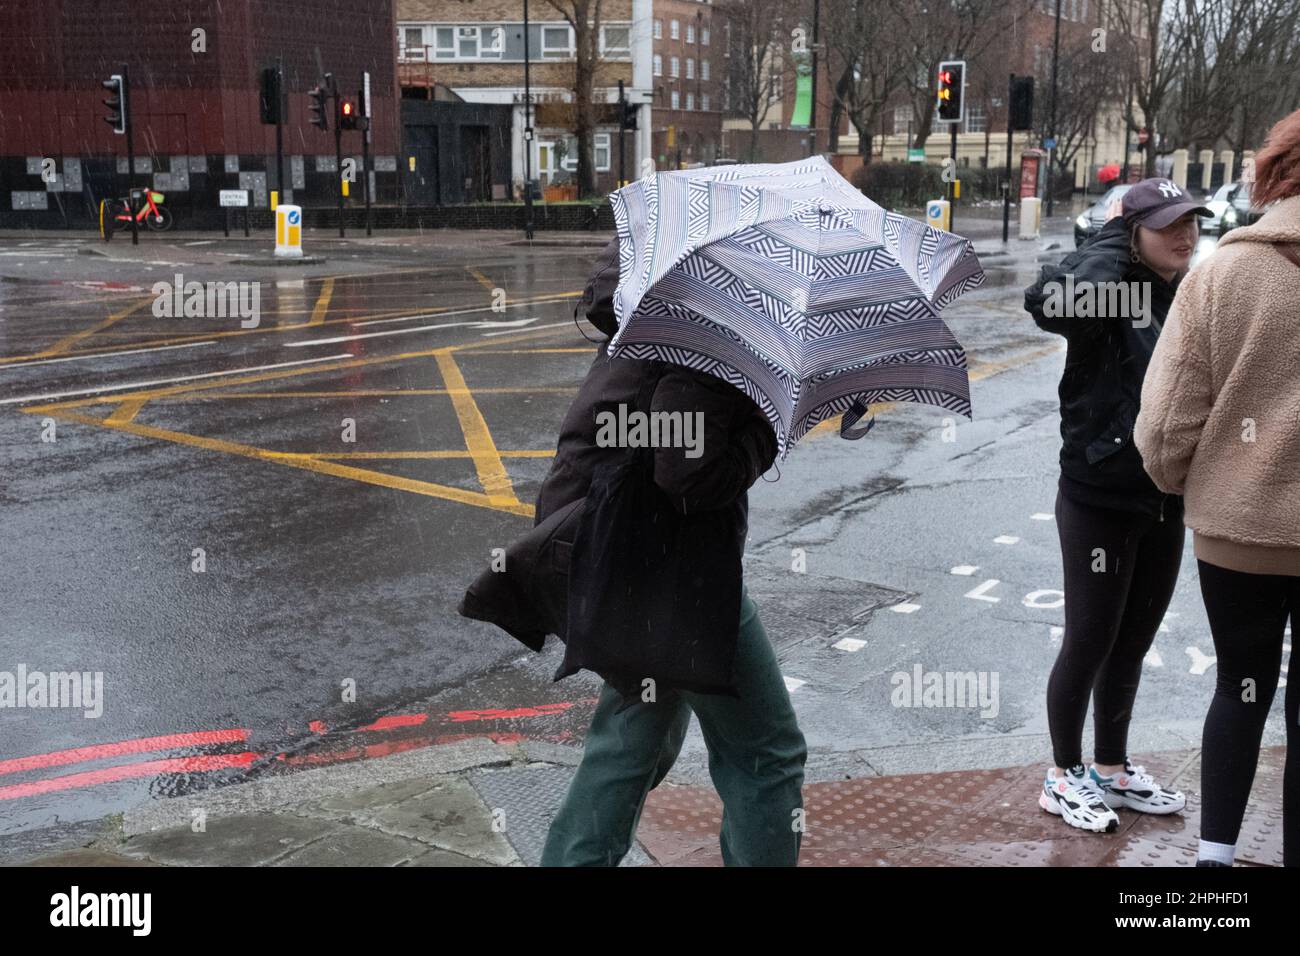 Frau, die während des stürmischen Wetters in London, Großbritannien, mit ihrem Regenschirm kämpft Stockfoto